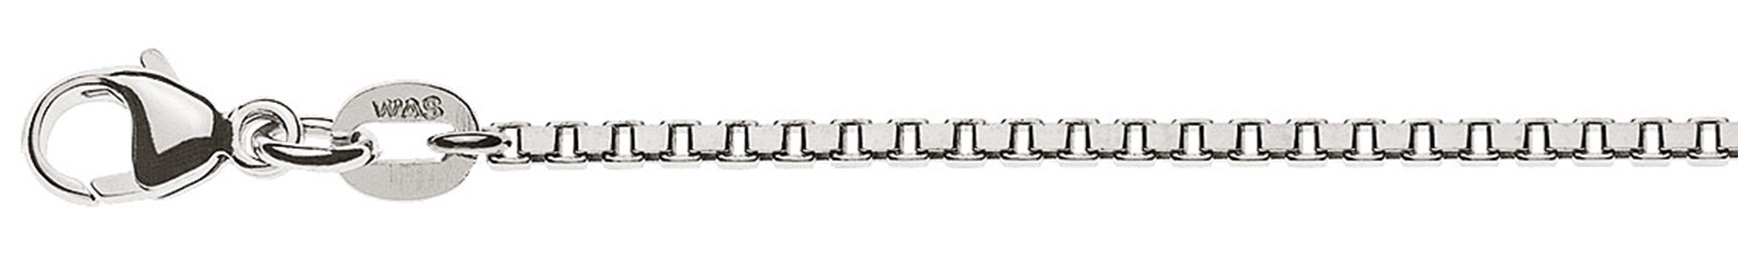 AURONOS Prestige Halskette Weissgold 18K Venezianerkette diamantiert 45cm 1.6mm